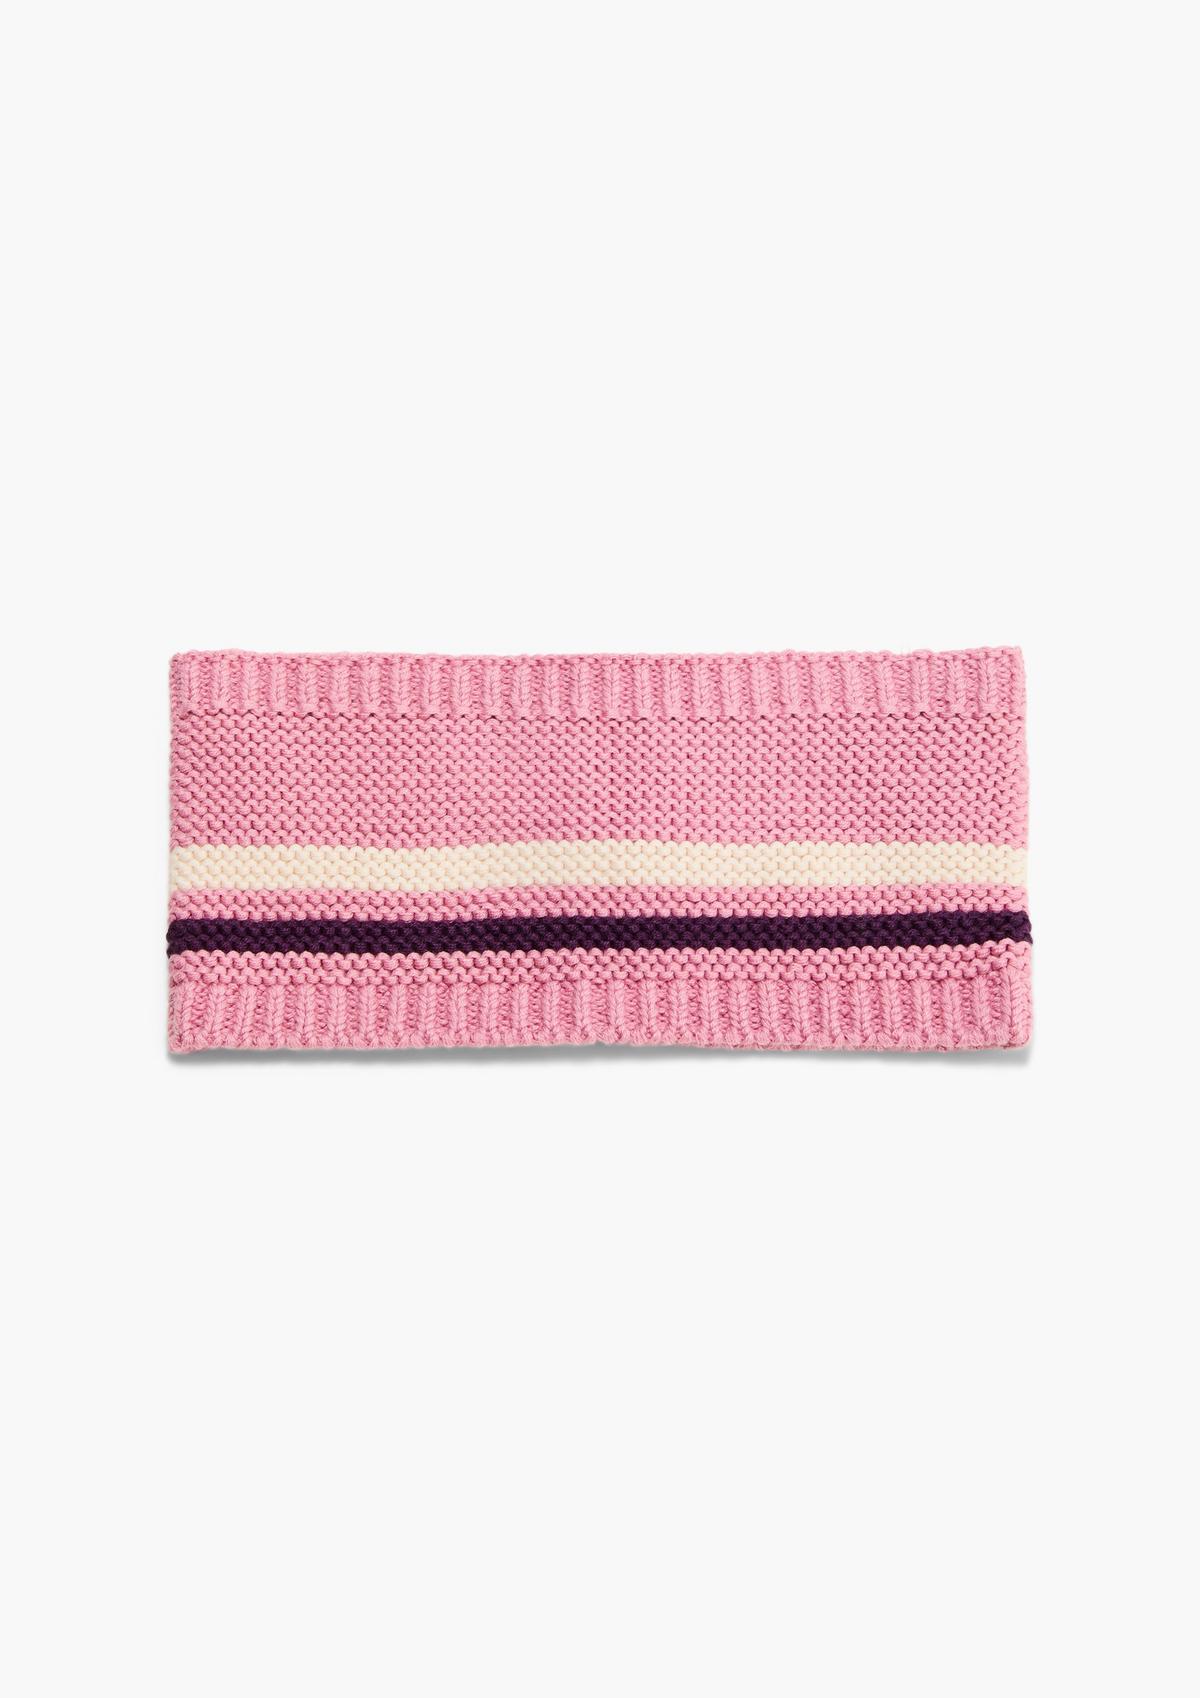 s.Oliver Purl knit headband